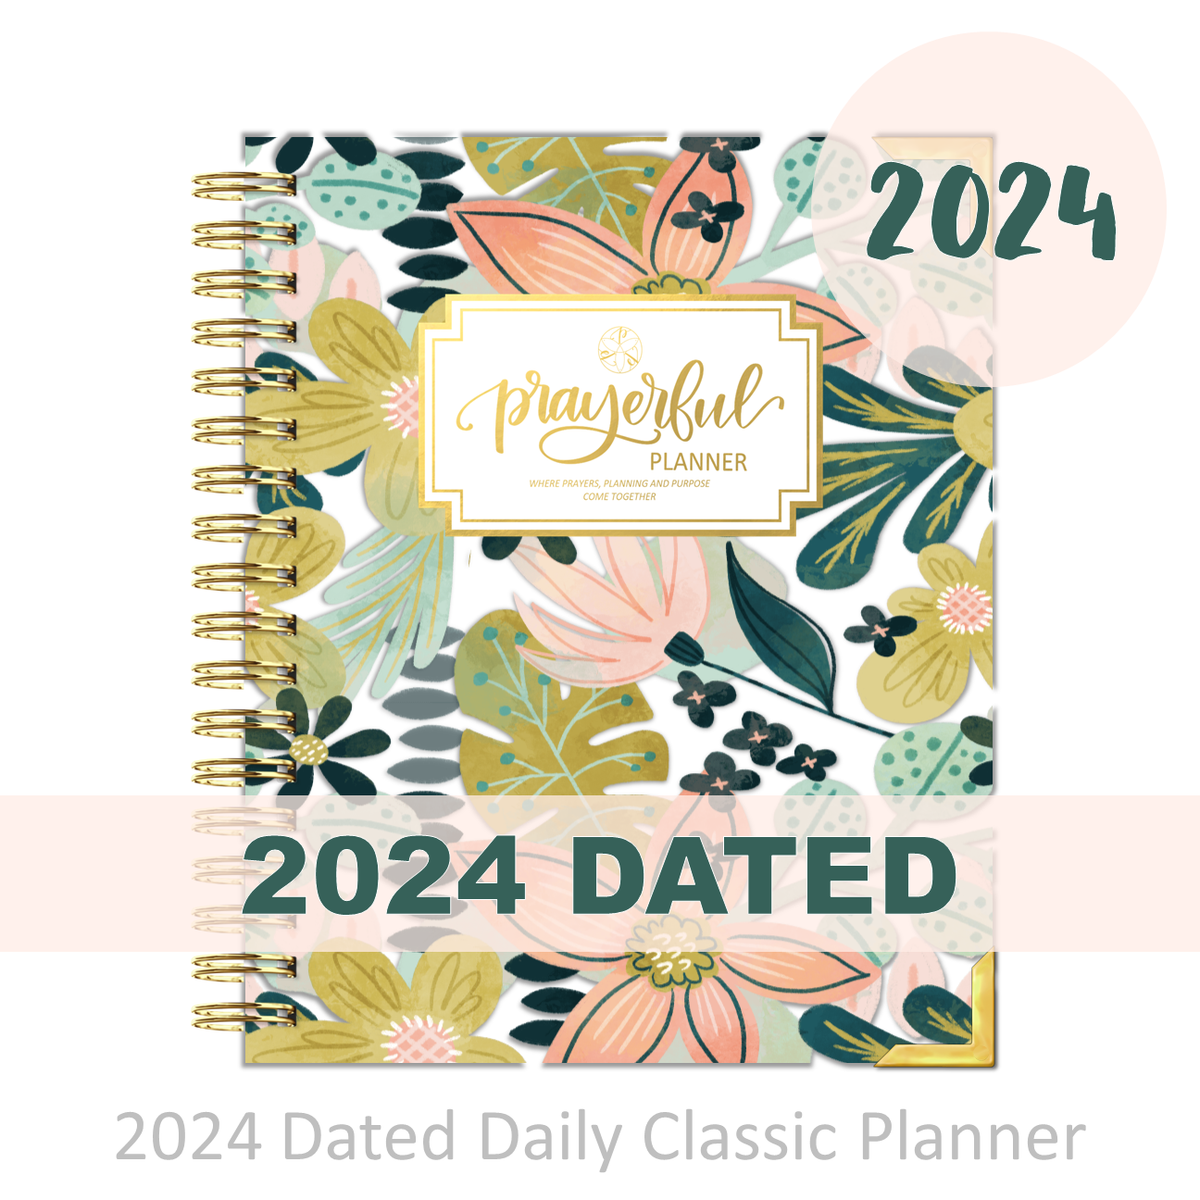 2024 Christian Planner - Prayer Journal - Hello Revival